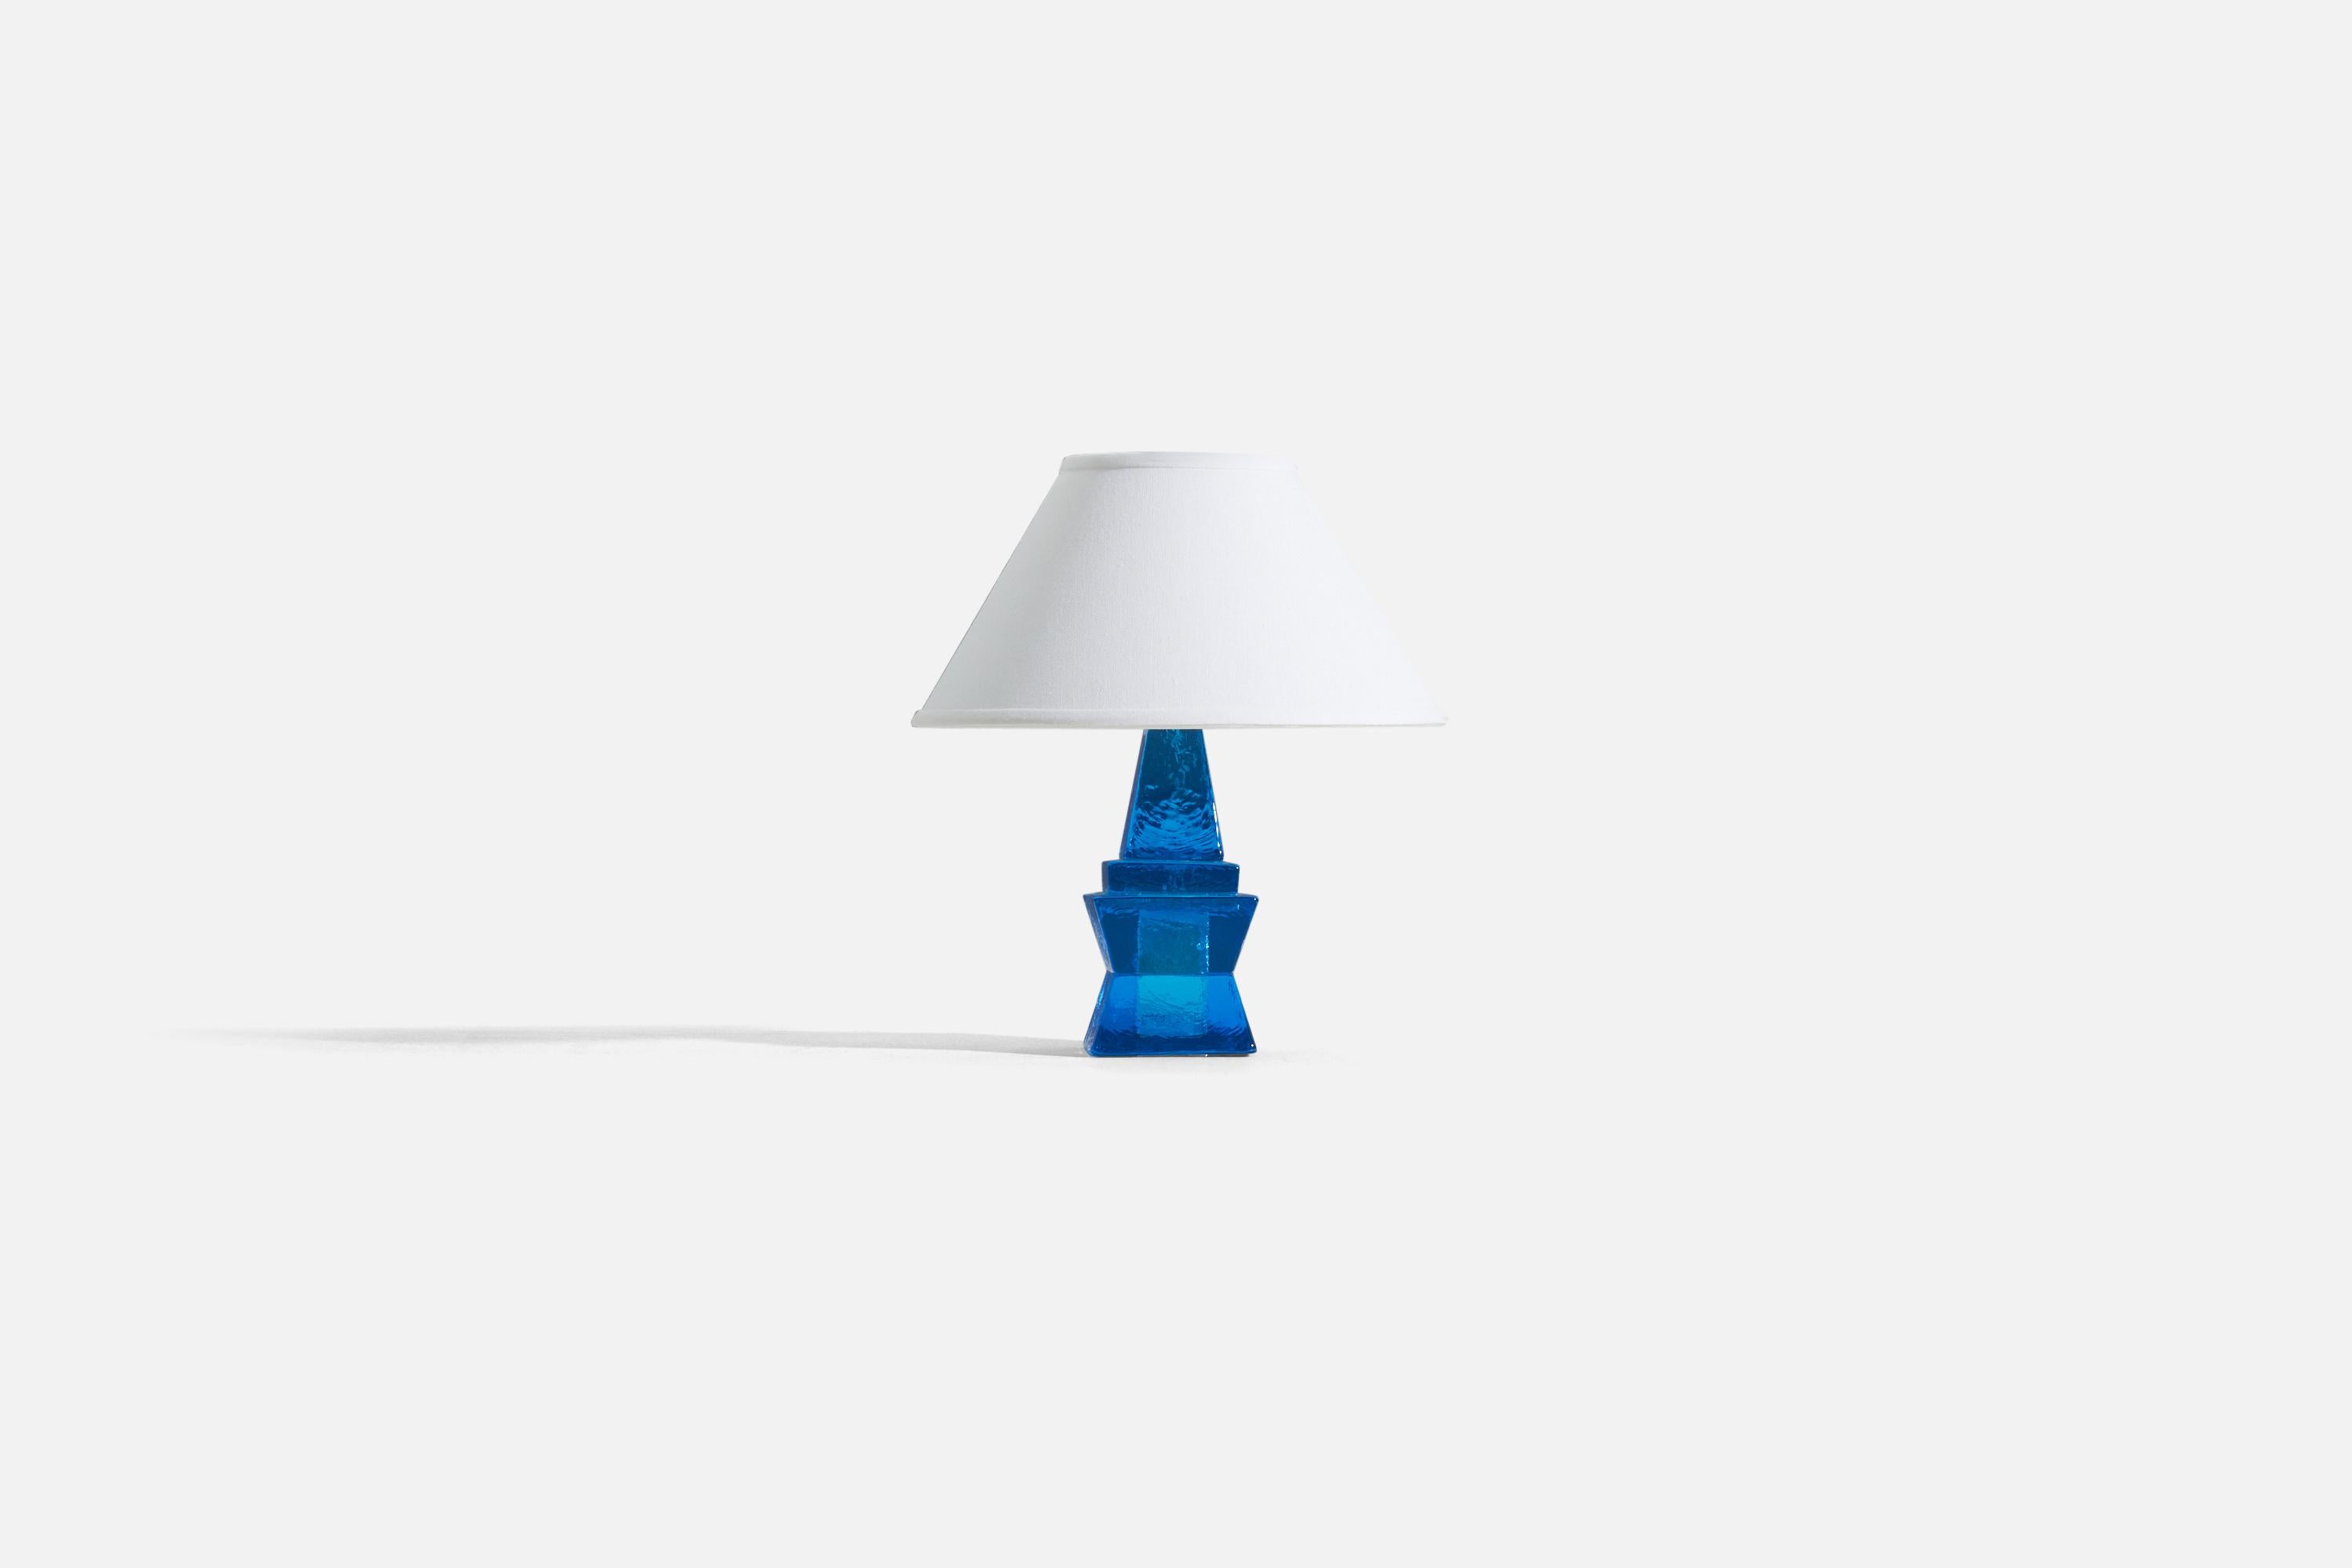 Une lampe de table en verre bleu conçue et produite en Suède, vers les années 1960.

Les mesures indiquées sont celles de la lampe elle-même. Vendu sans abat-jour.

Pour référence :
Dimensions de l'abat-jour : 5 x 12,25 x 7,25 - (T x B x